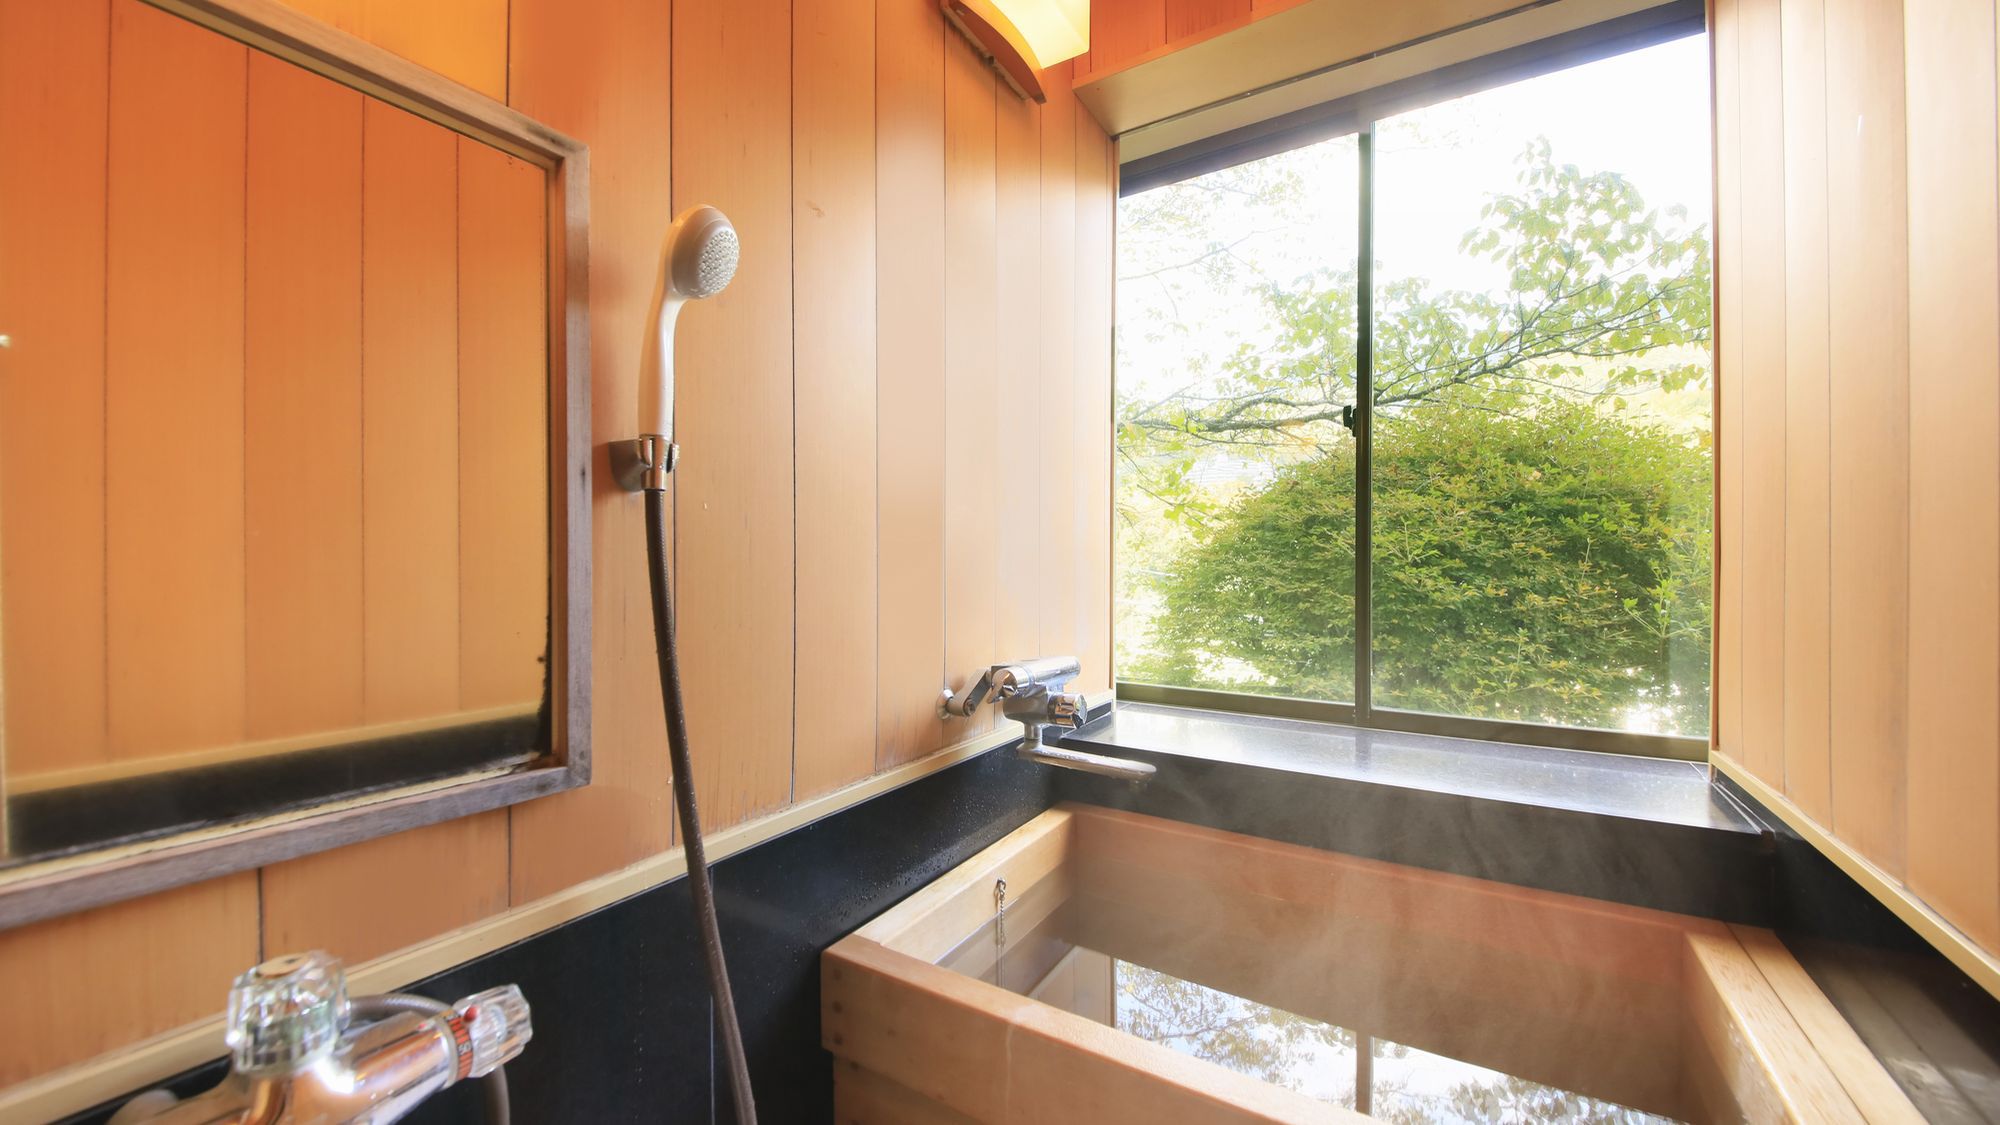 【C】源泉檜風呂・トイレ付標準和室(6畳タイプ) 客室一例